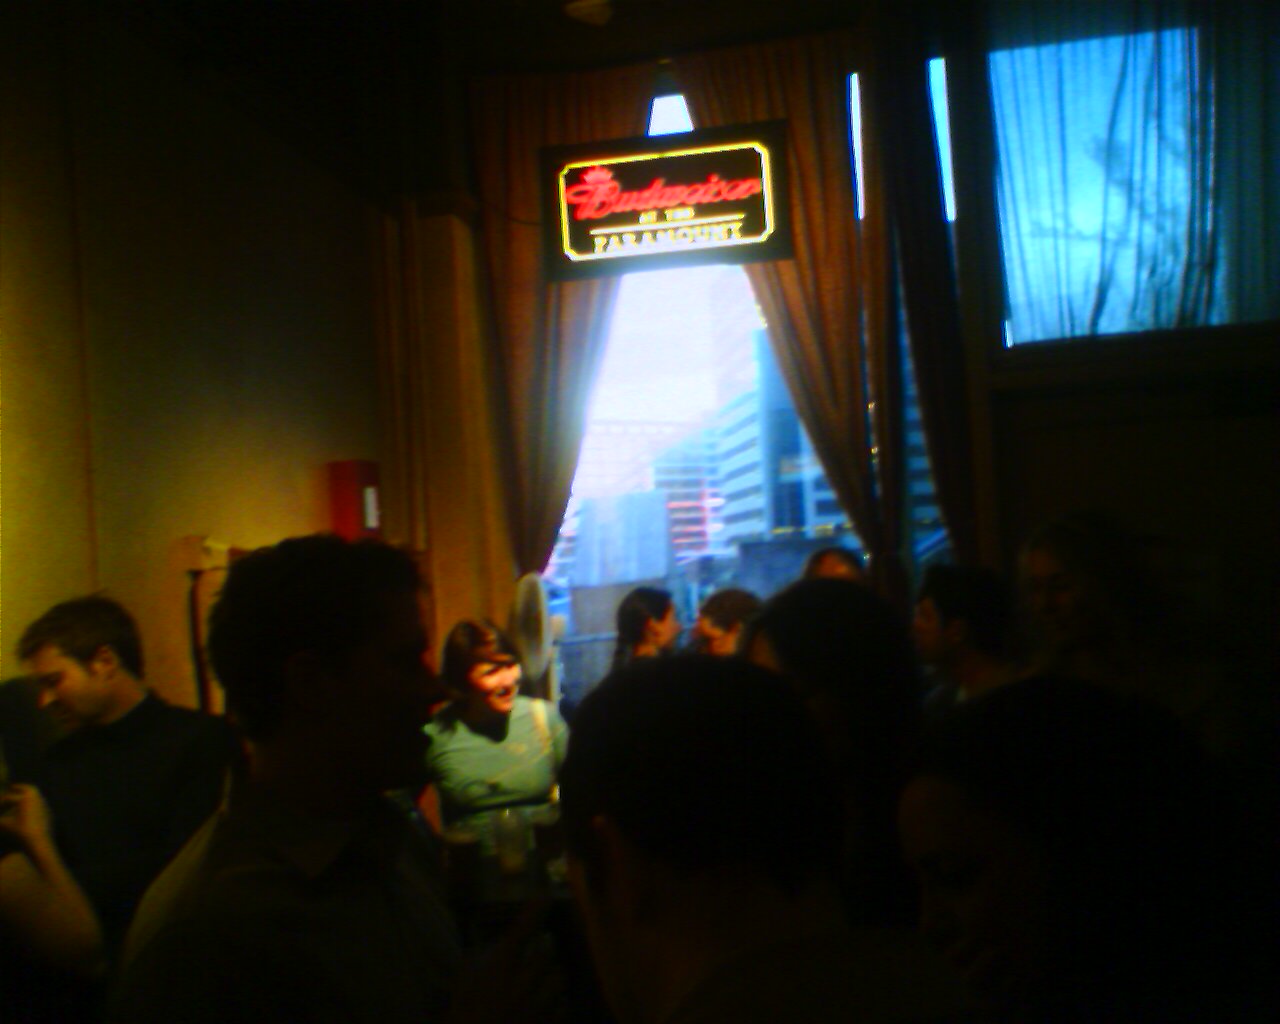 The bar @ Paramount